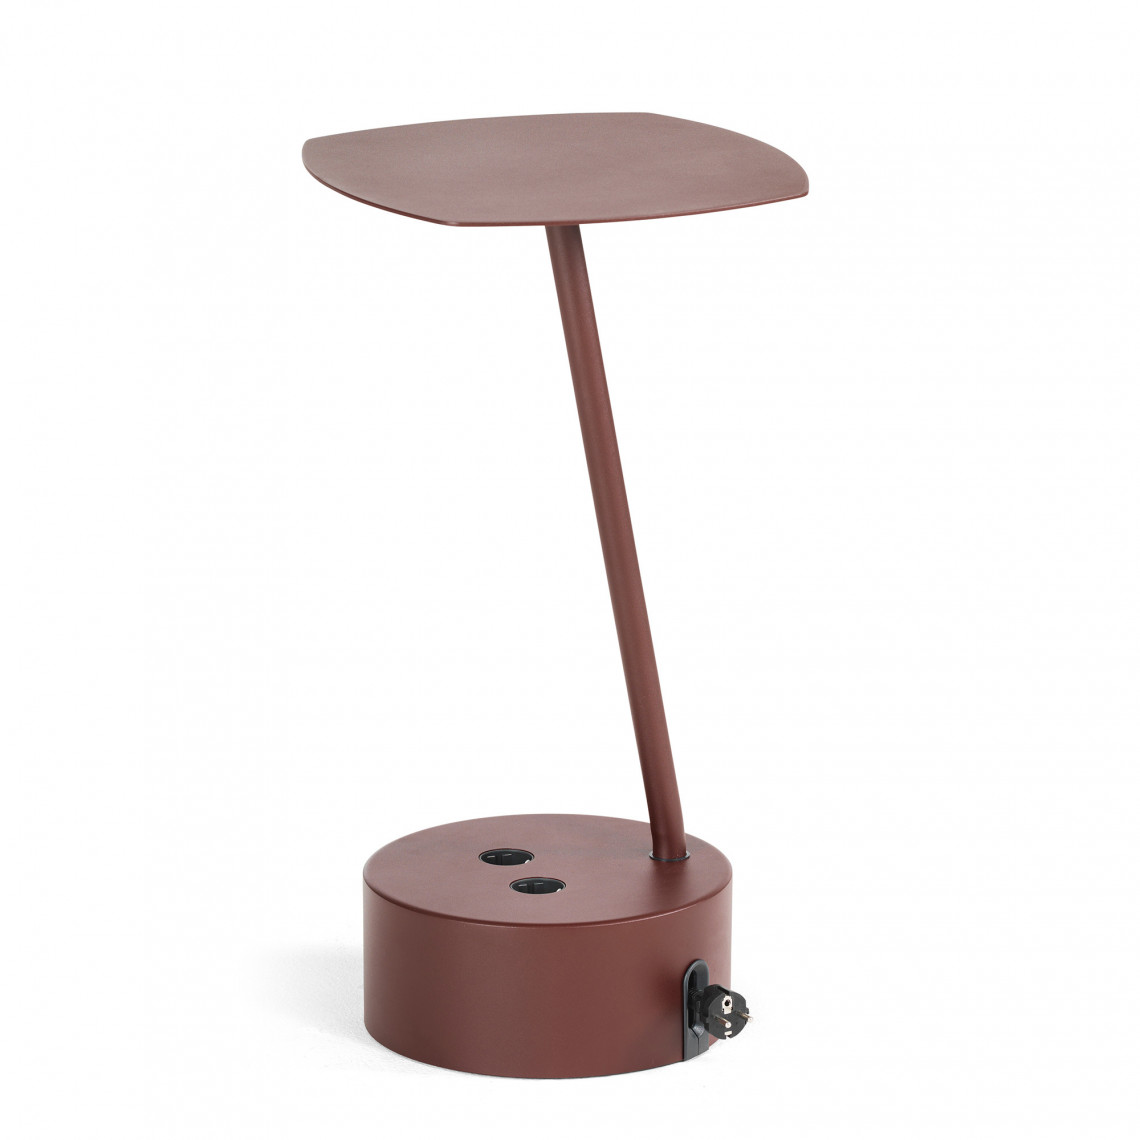 Sidebord Add Cable Table - 2 stikkontakter, 5 m ledning, Højde 66 cm, Farve Vinrød